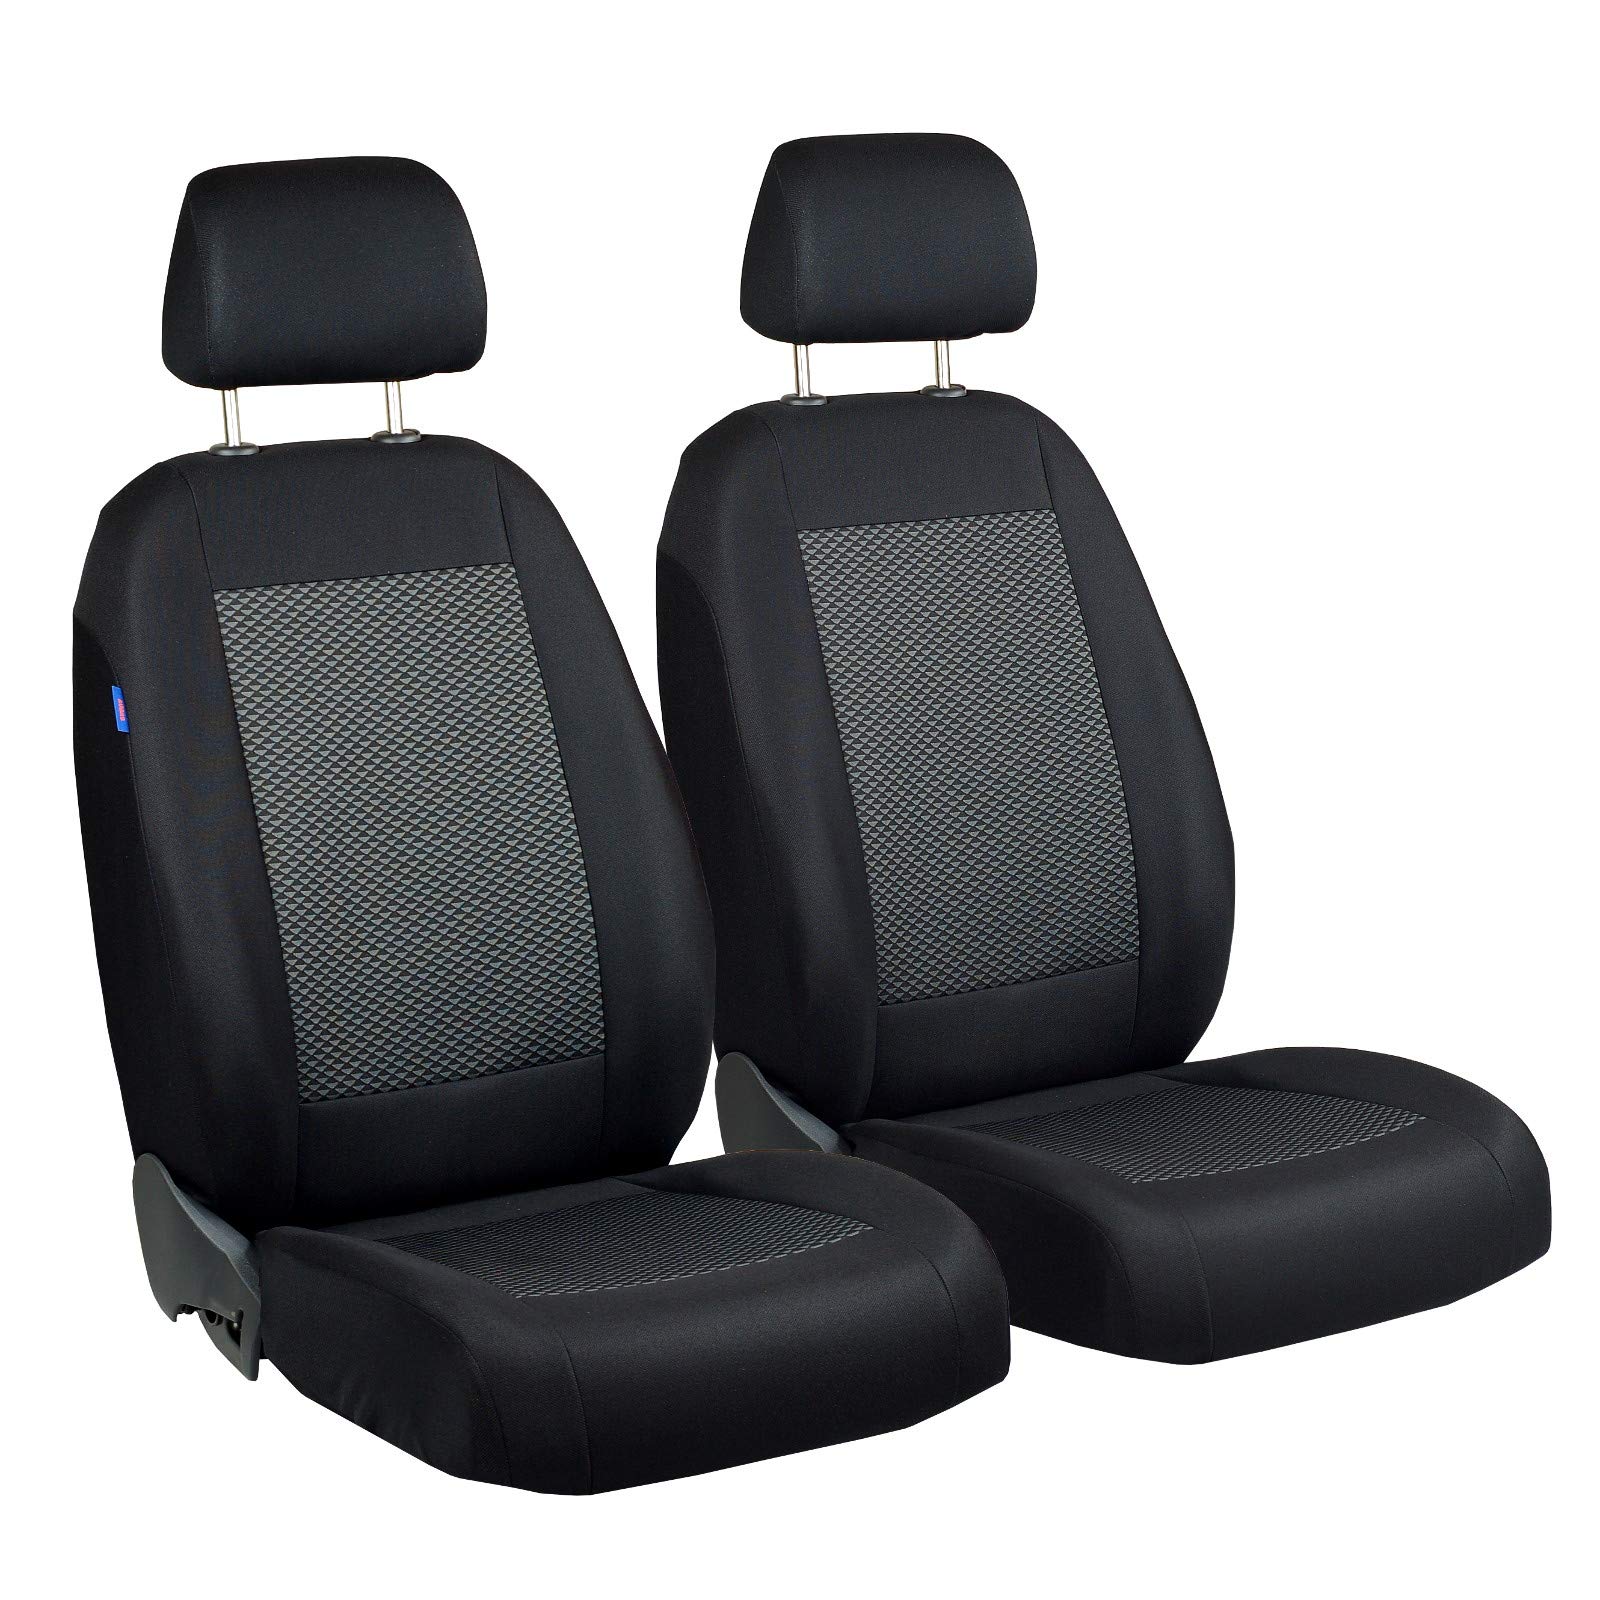 Zakschneider Passat Vorne Sitzbezüge - für Fahrer und Beifahrer - Farbe Premium Schwarz-graue Dreiecke von Zakschneider